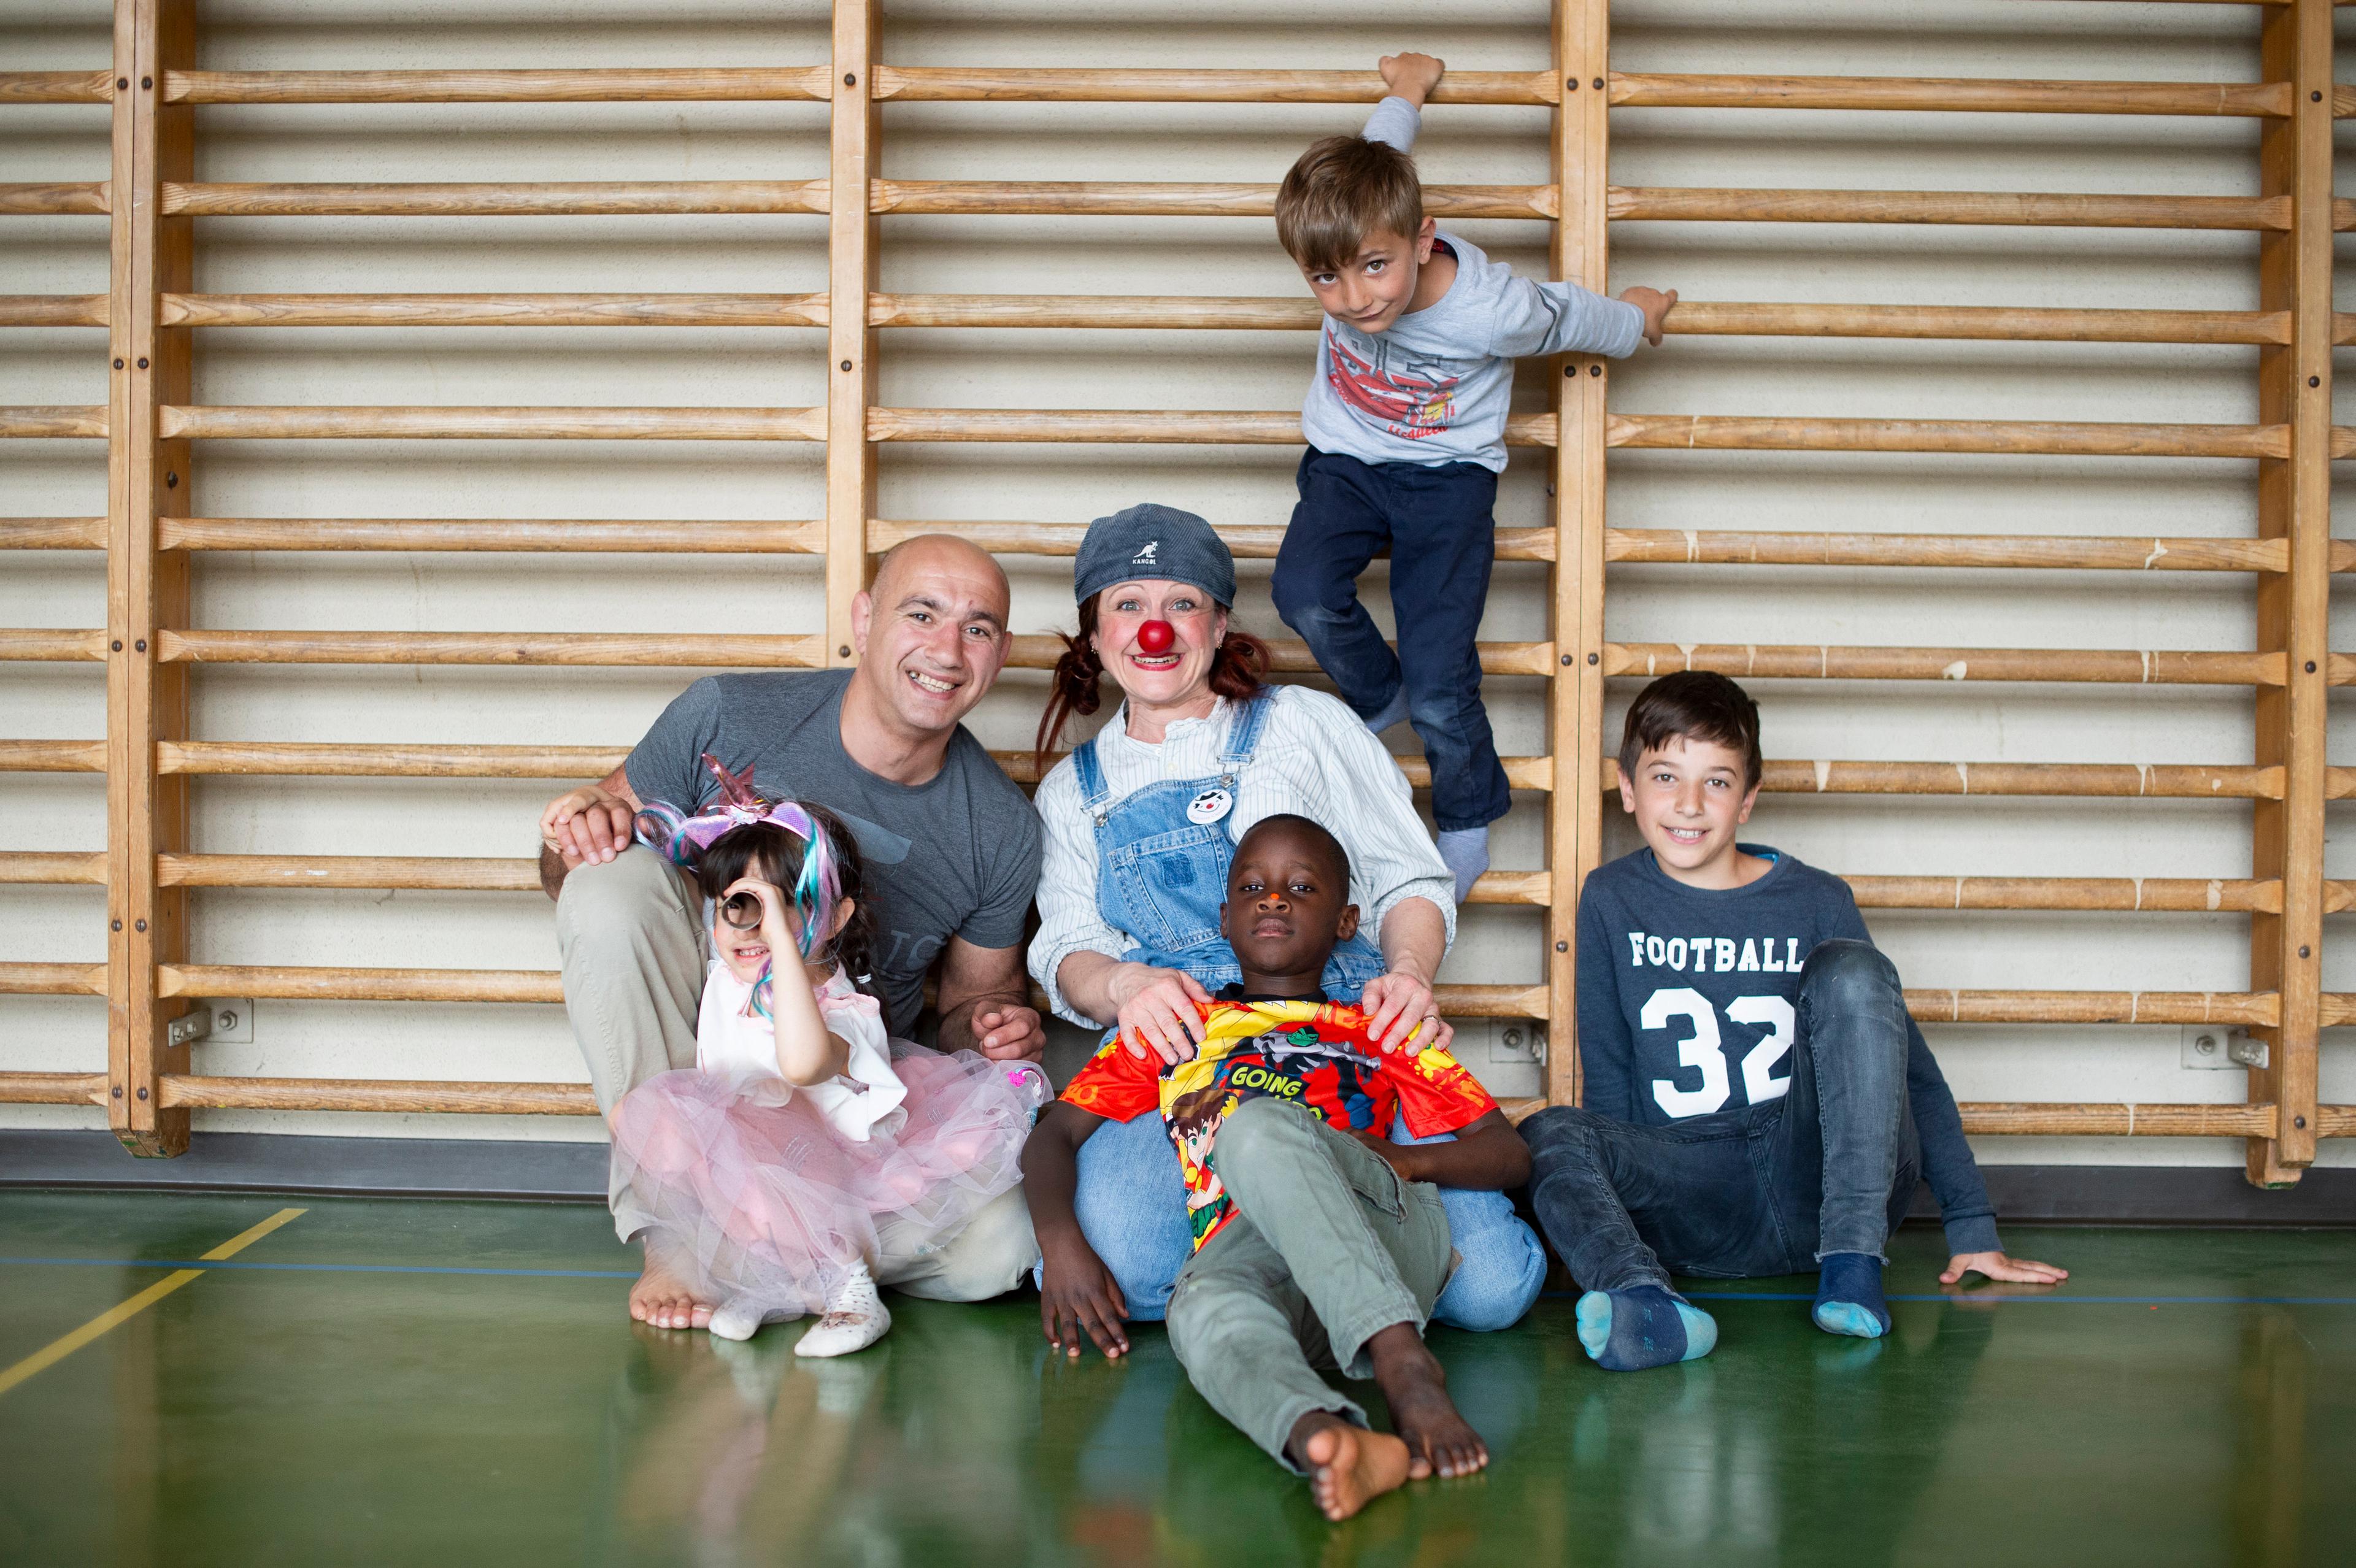 Marianna, quattro anni, suo padre, il clown Zilibii e due ragazzi sono seduti sul pavimento di una palestra.  Un ragazzo si aggrappa alle sbarre del muro in alto. Tutti ridono.